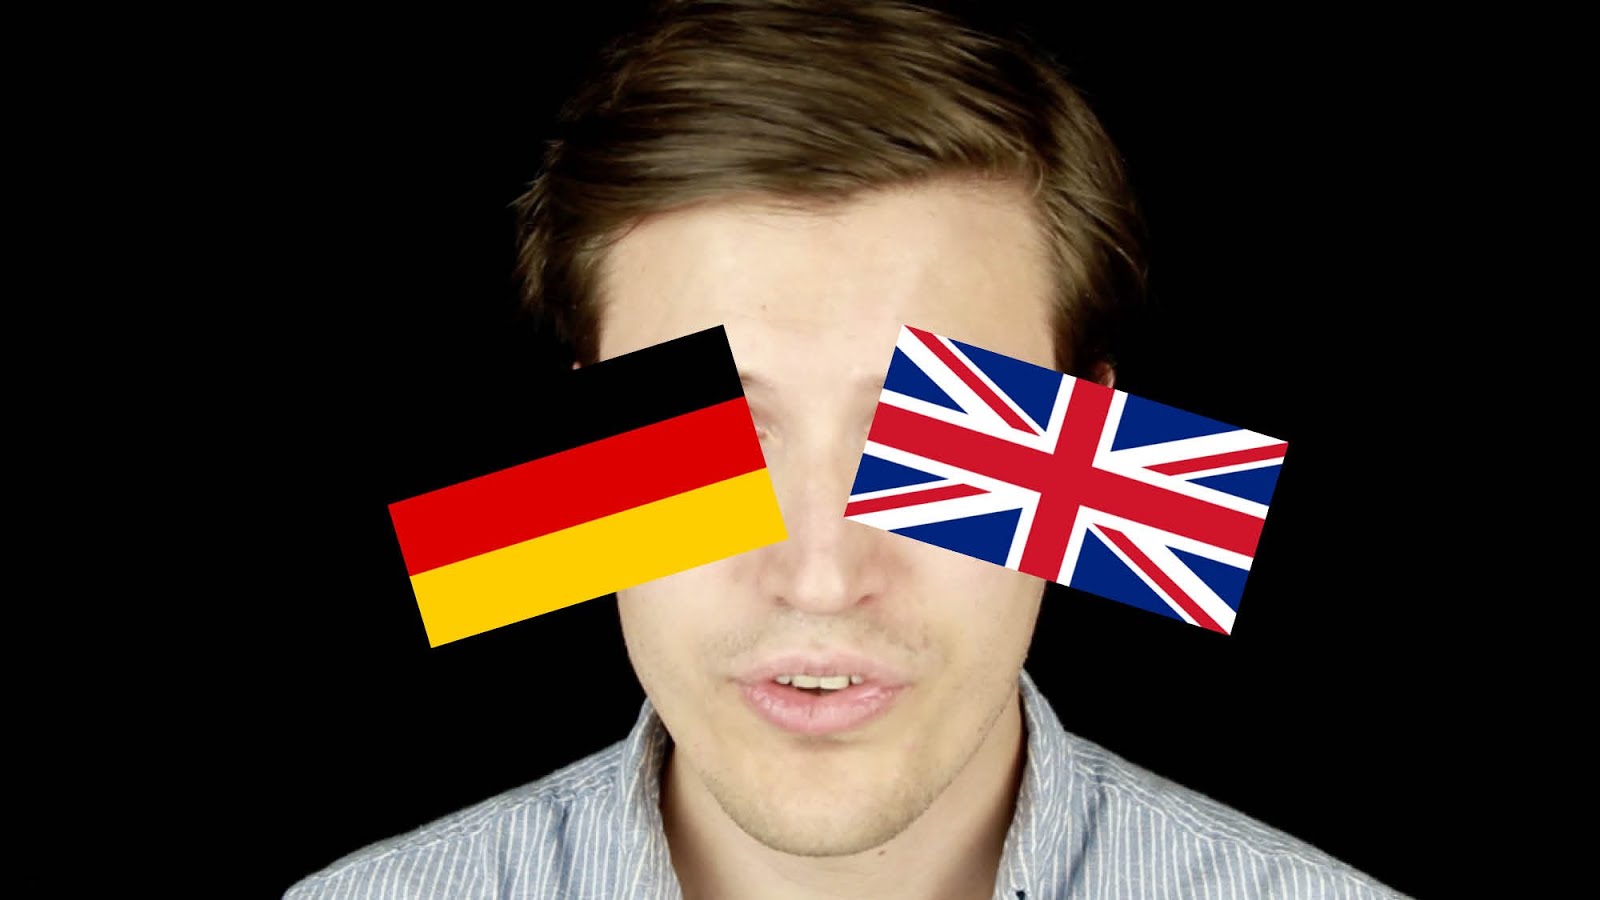 He speaks german. Немецкий акцент. Разные акценты Германии. Немецкий акцент в английском. Speak German.